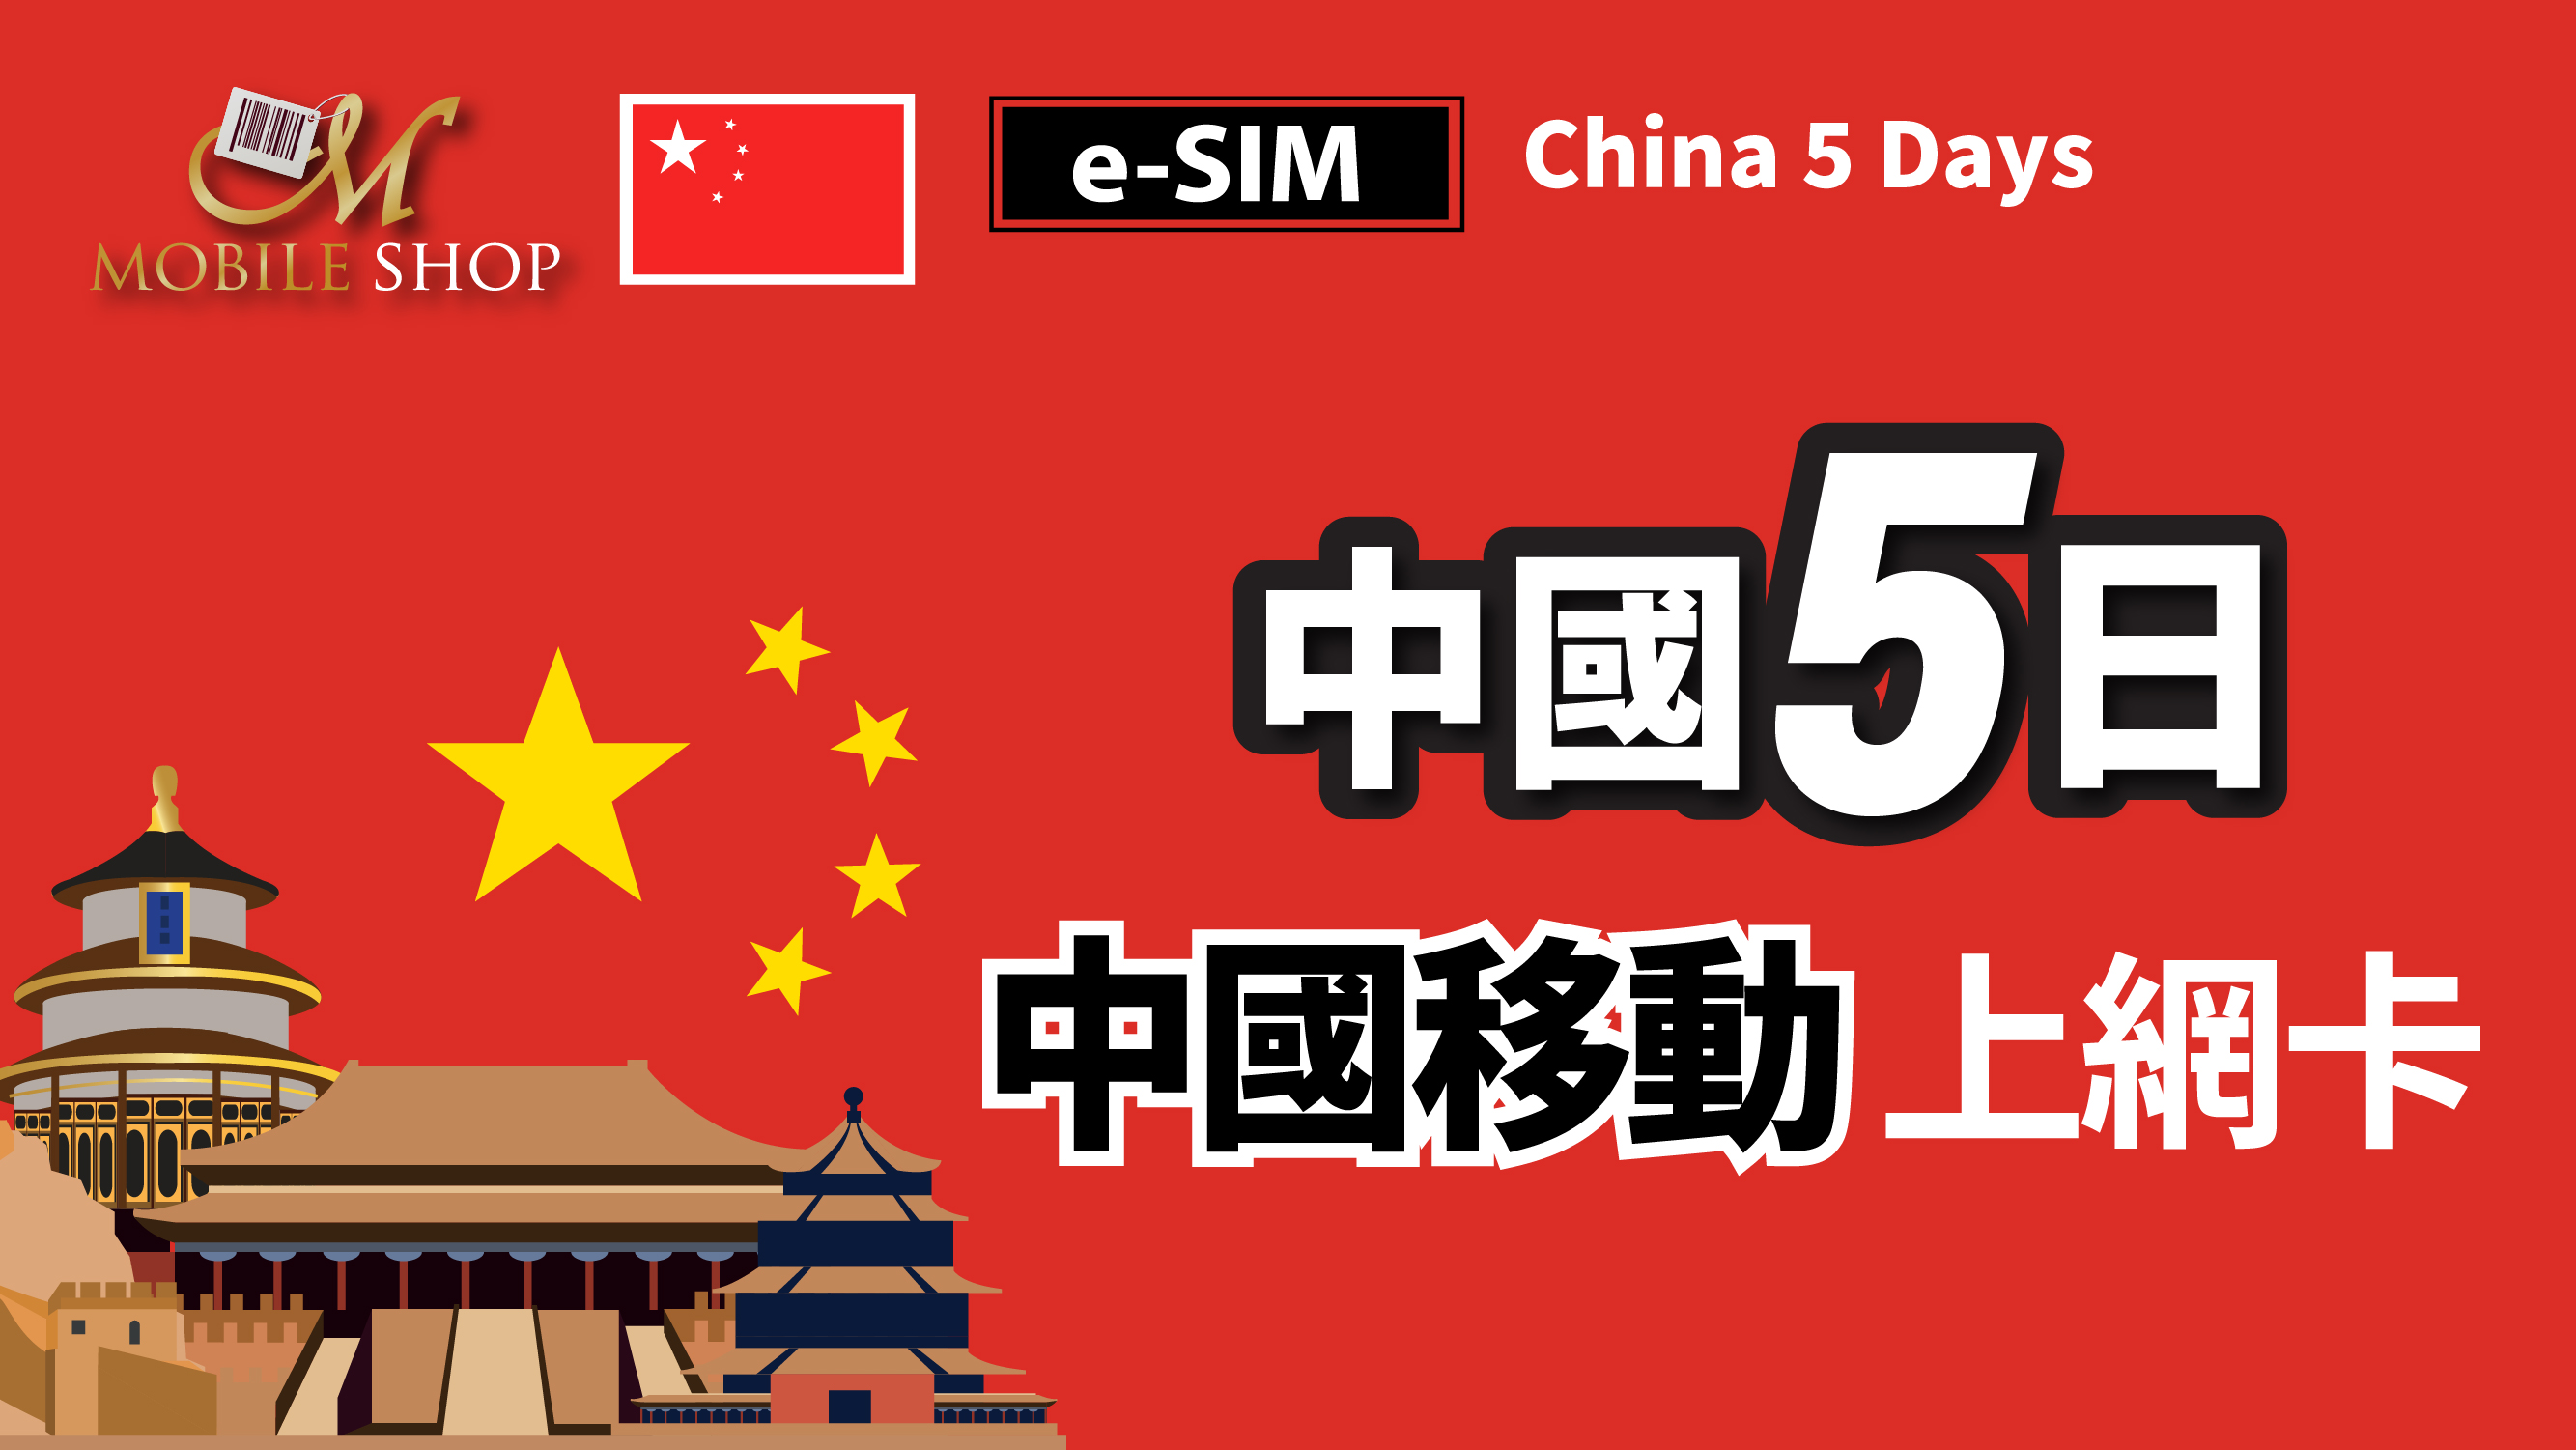 eSIM / China 5days